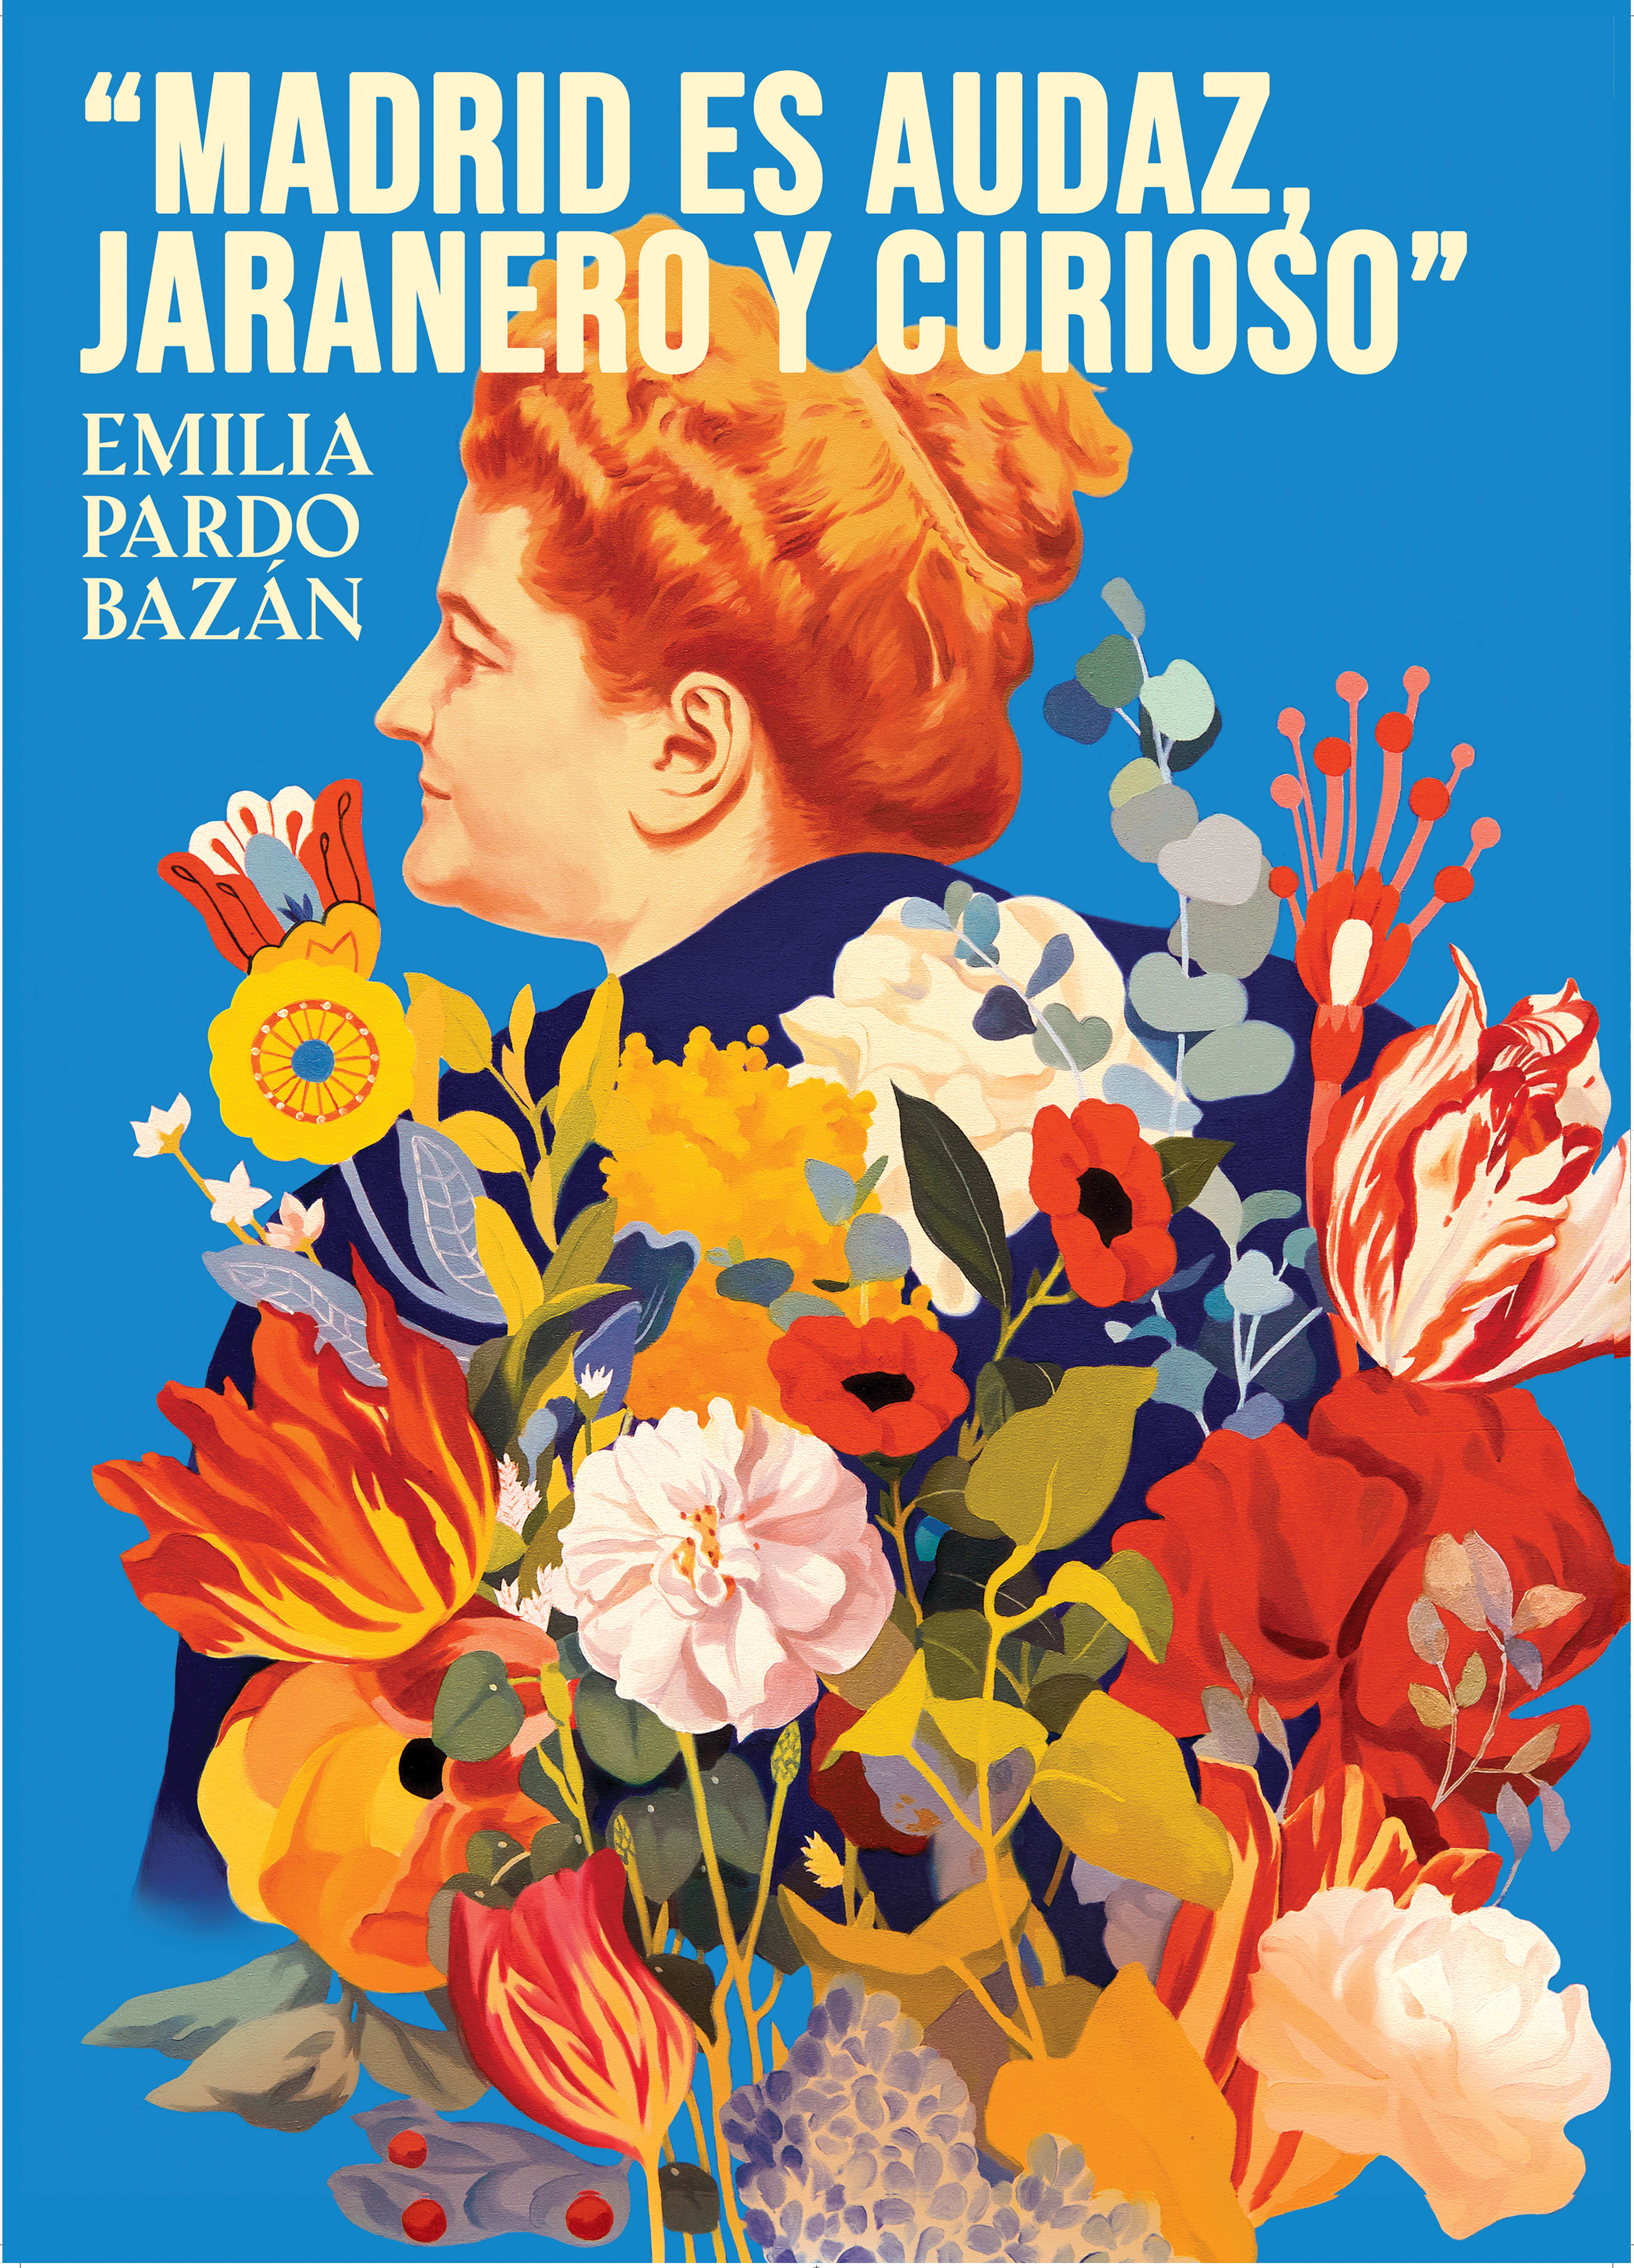 Imagen diseñada por David de las Heras para ilustrar la programación con motivo del centenario de la muerte de Emilia Pardo Bazán